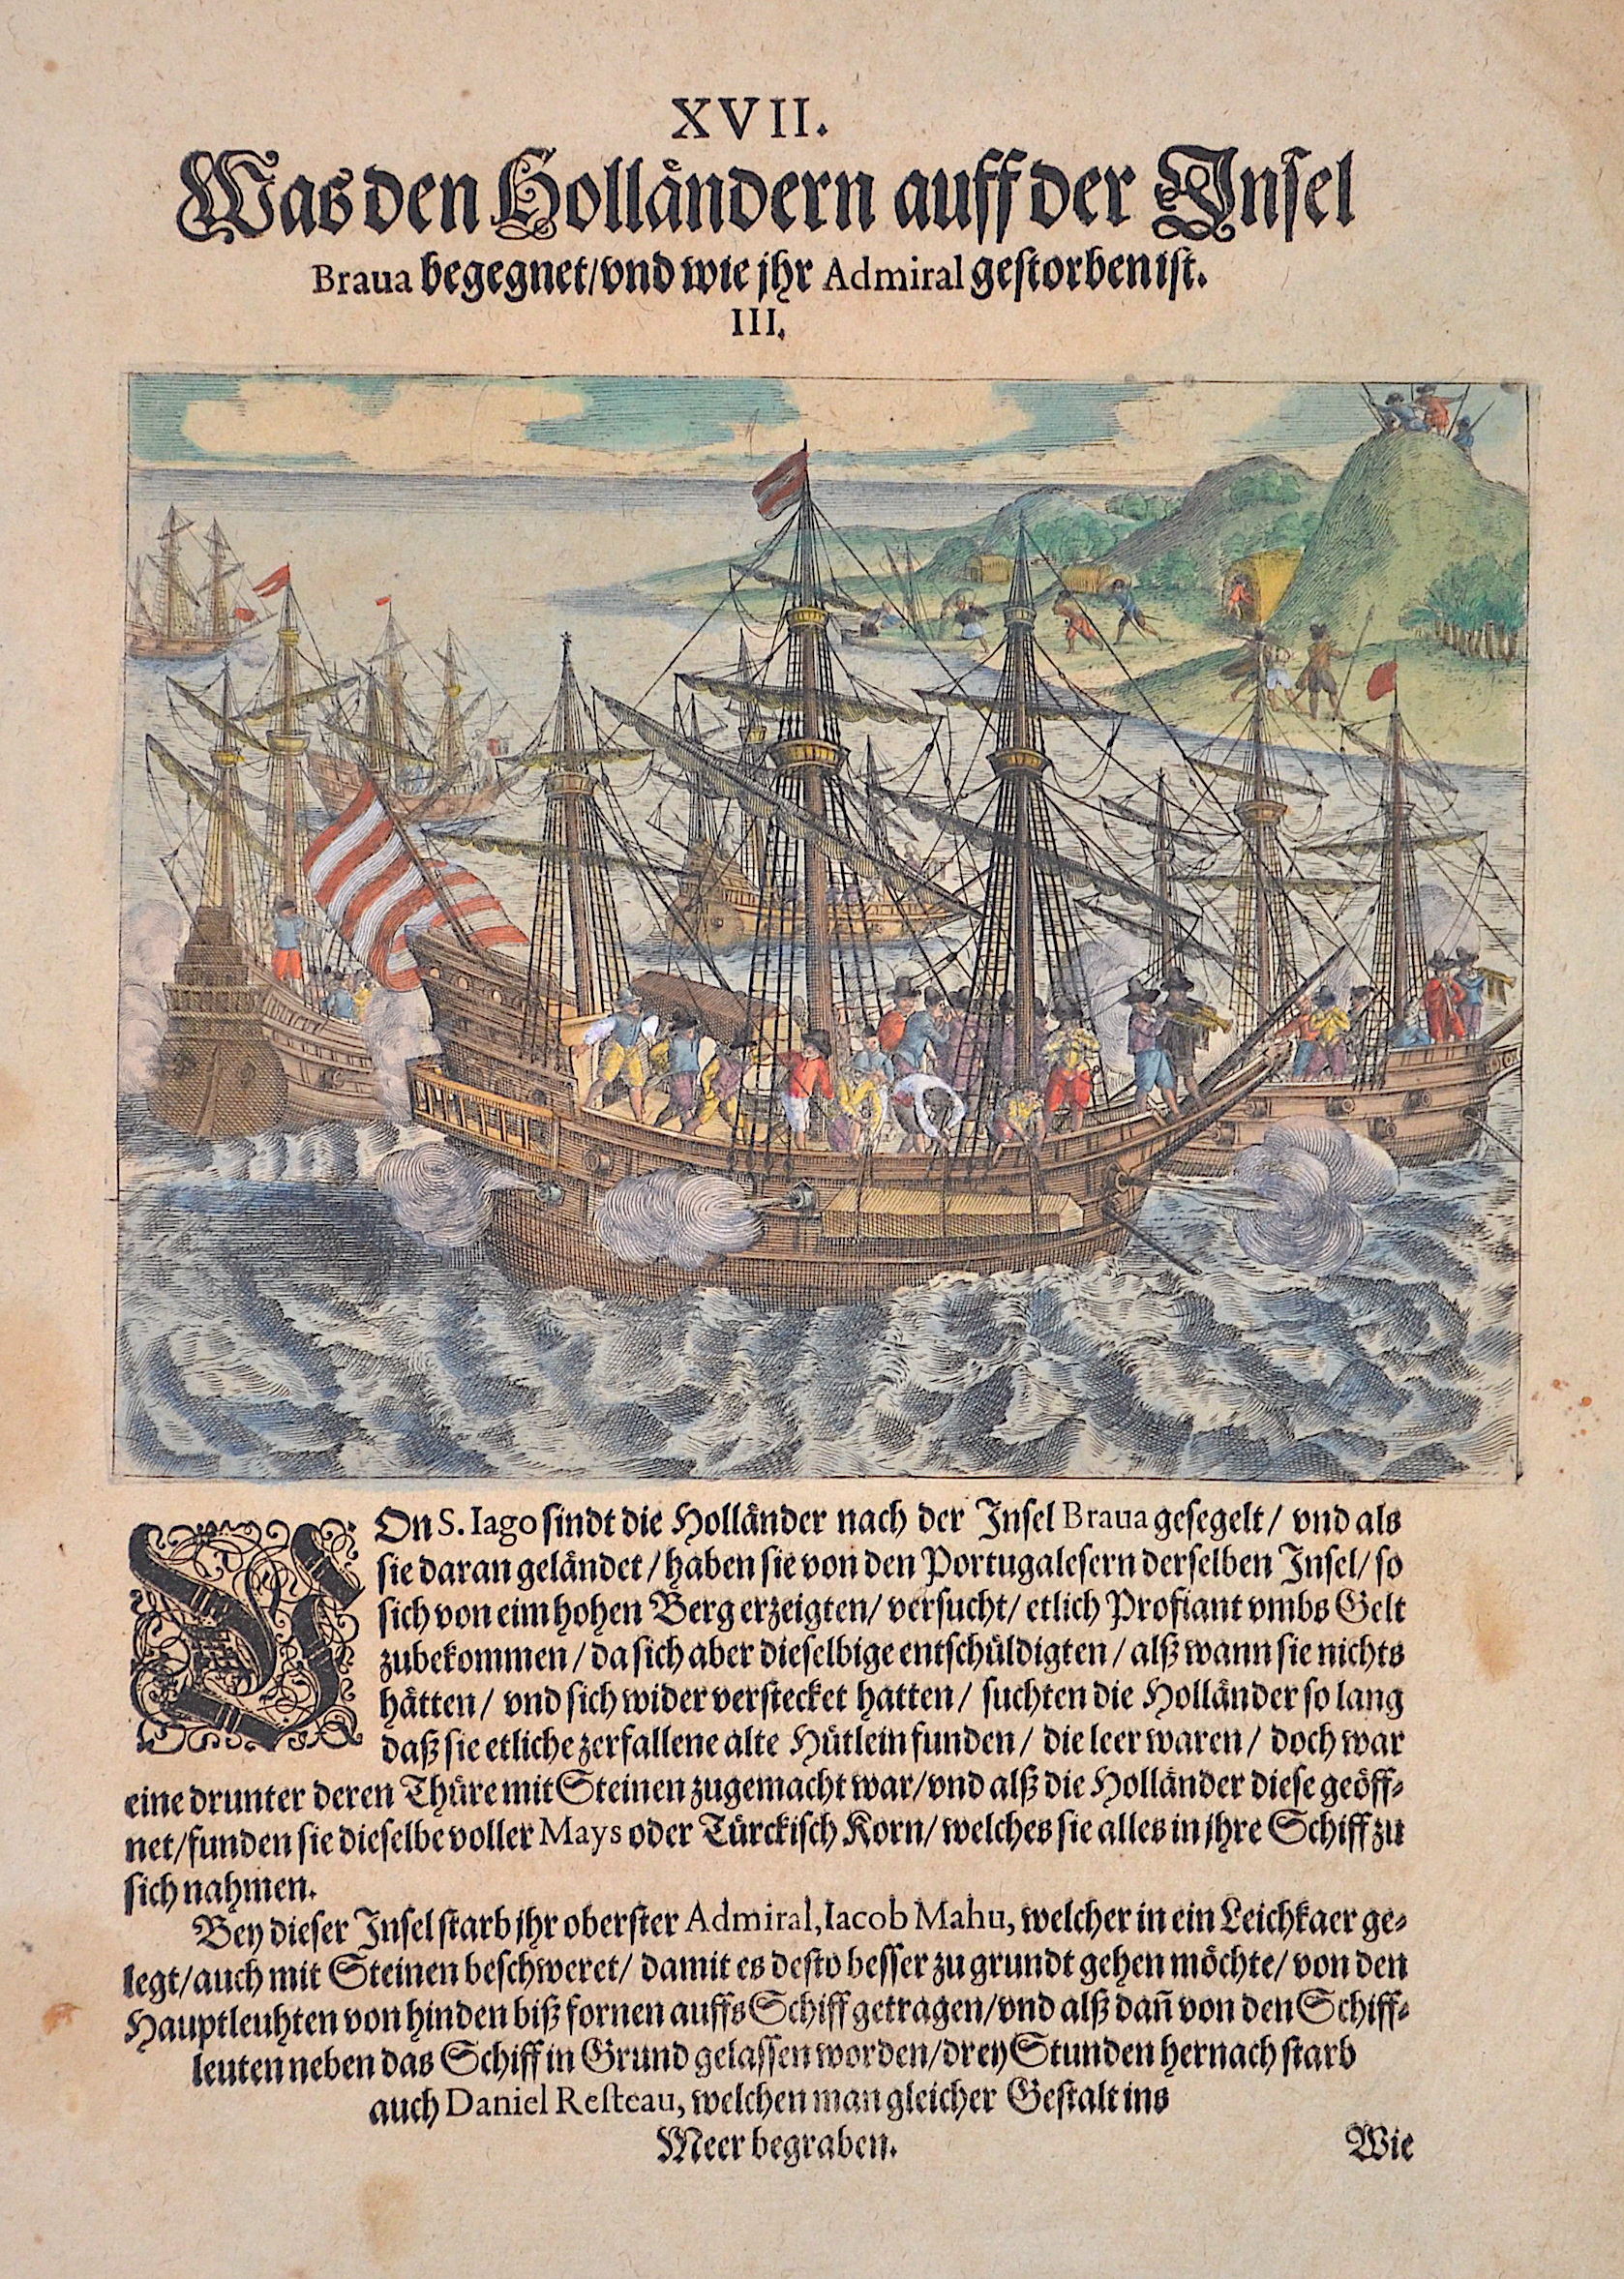 Bry, de Theodor, Dietrich Was den Holländern auff der Insel Brava begegnet/und wie ihr Admiral gestorben ist